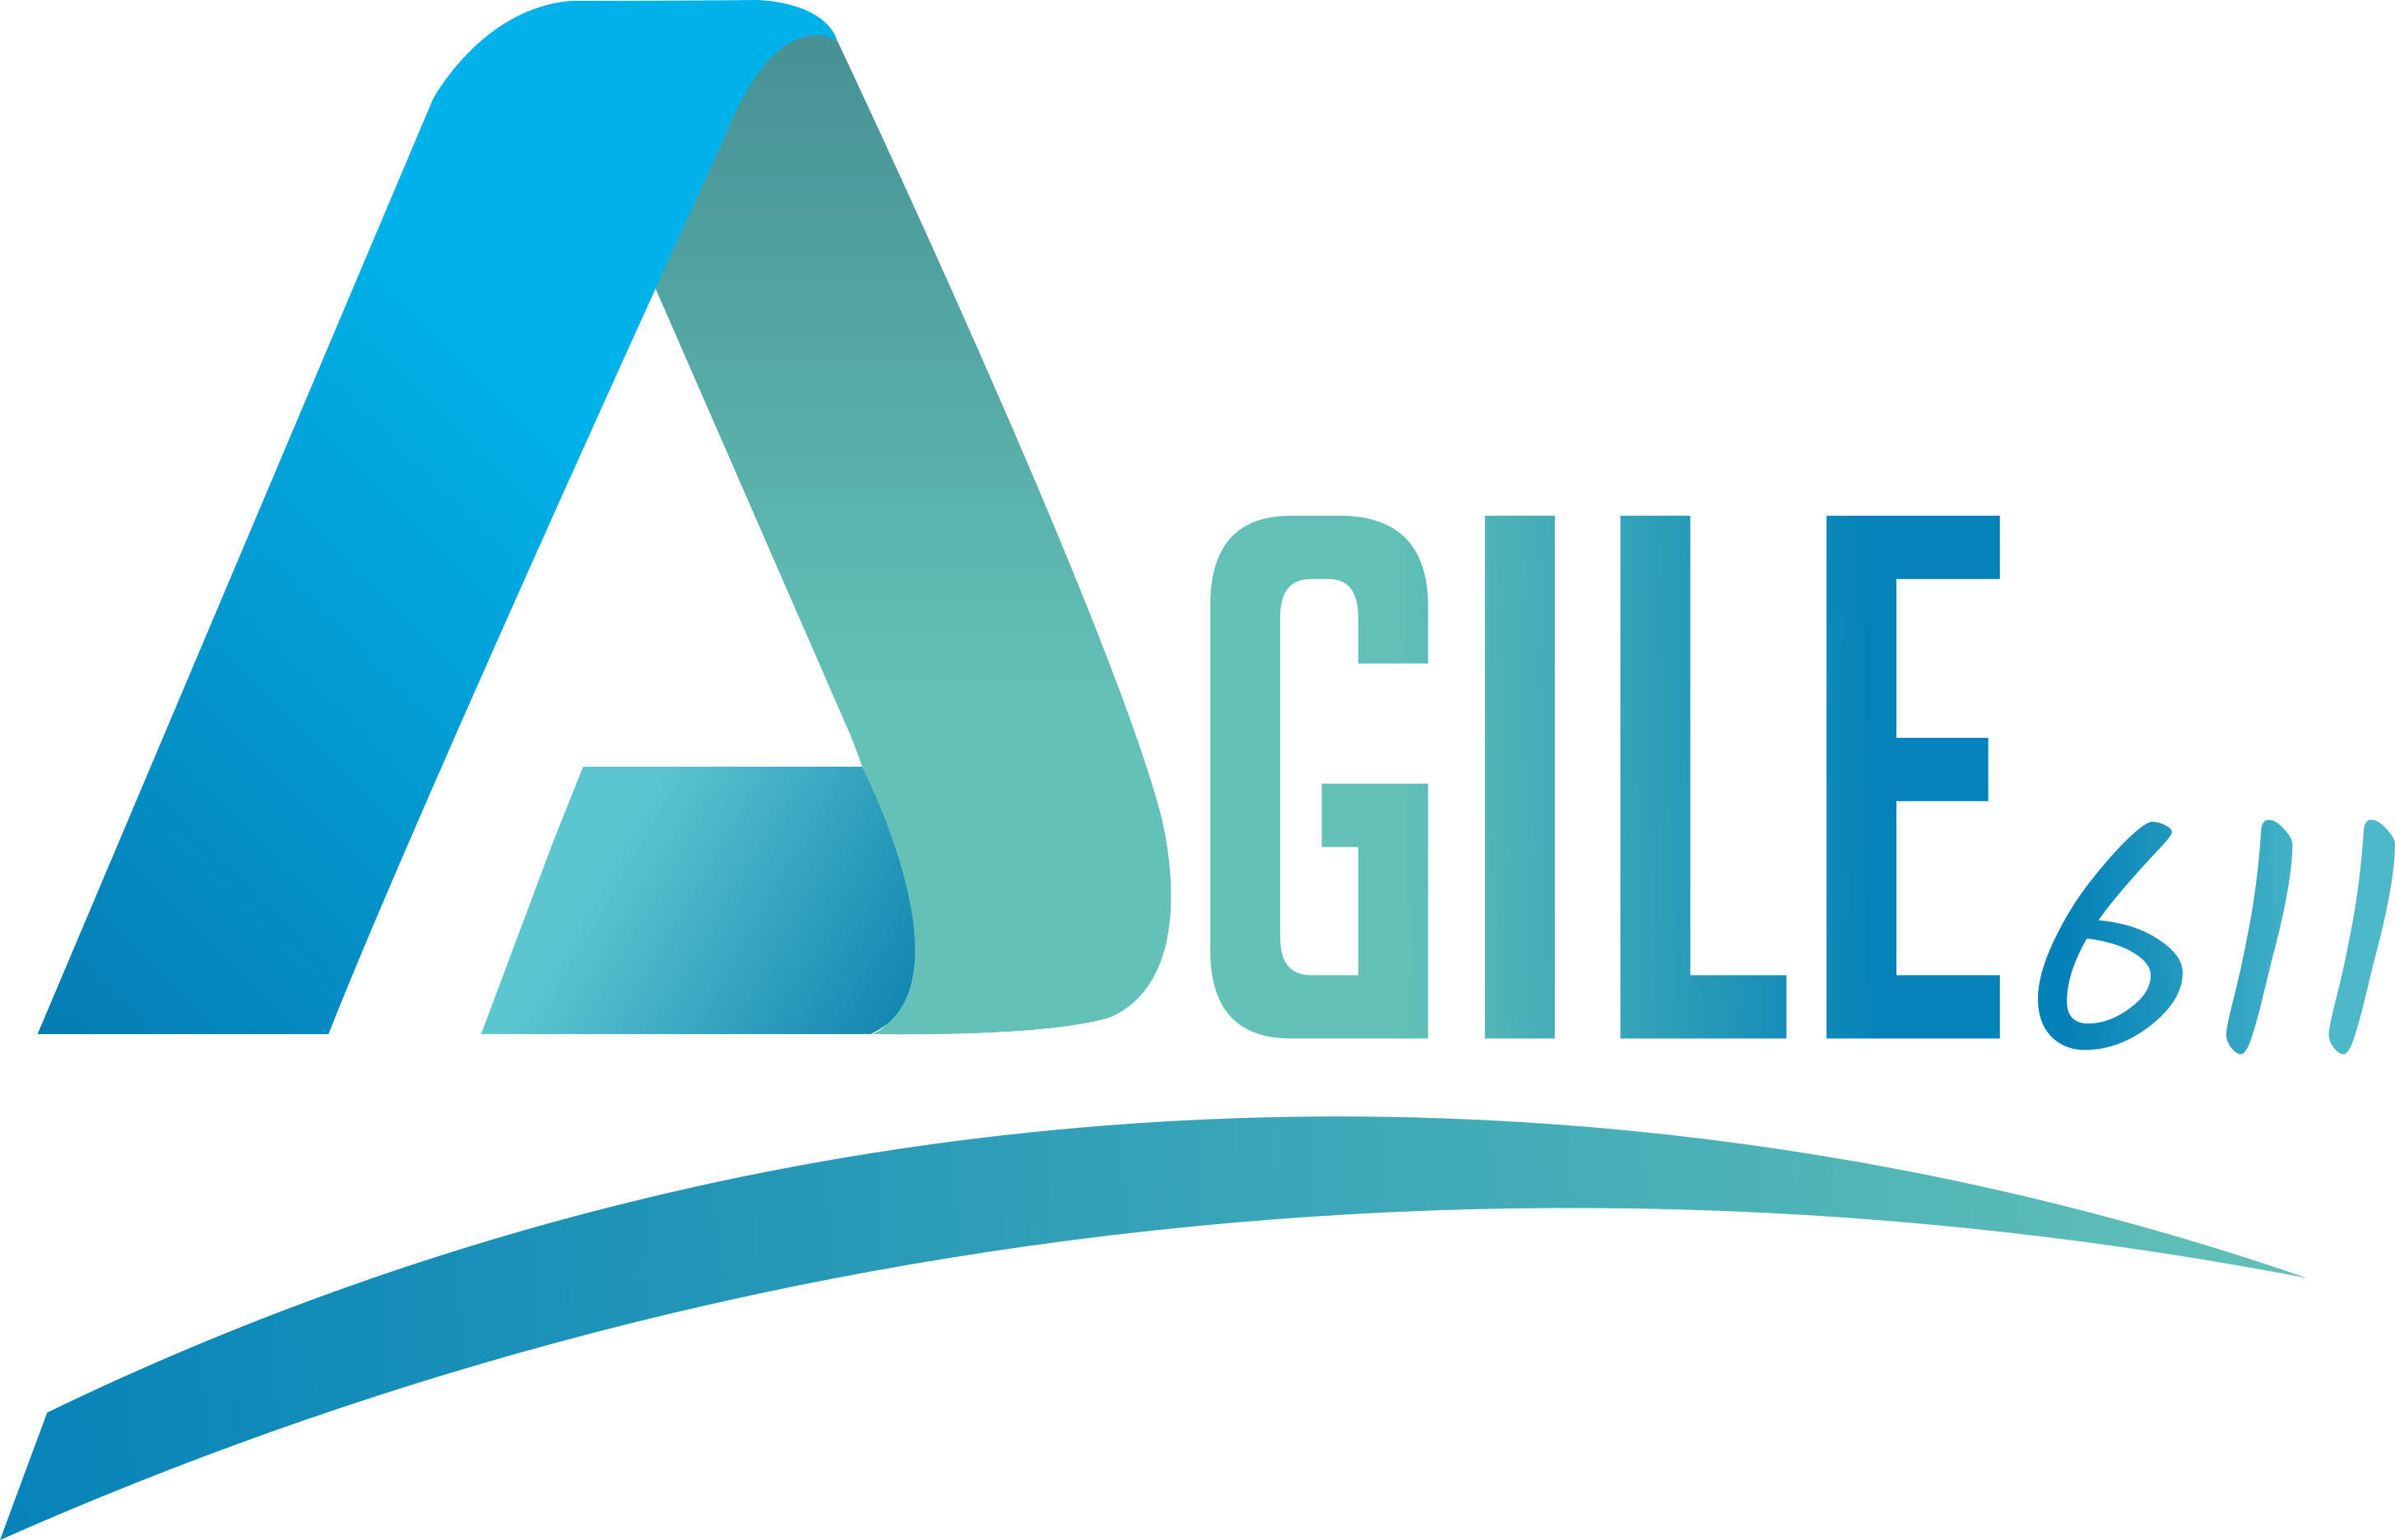 Agile611 logo